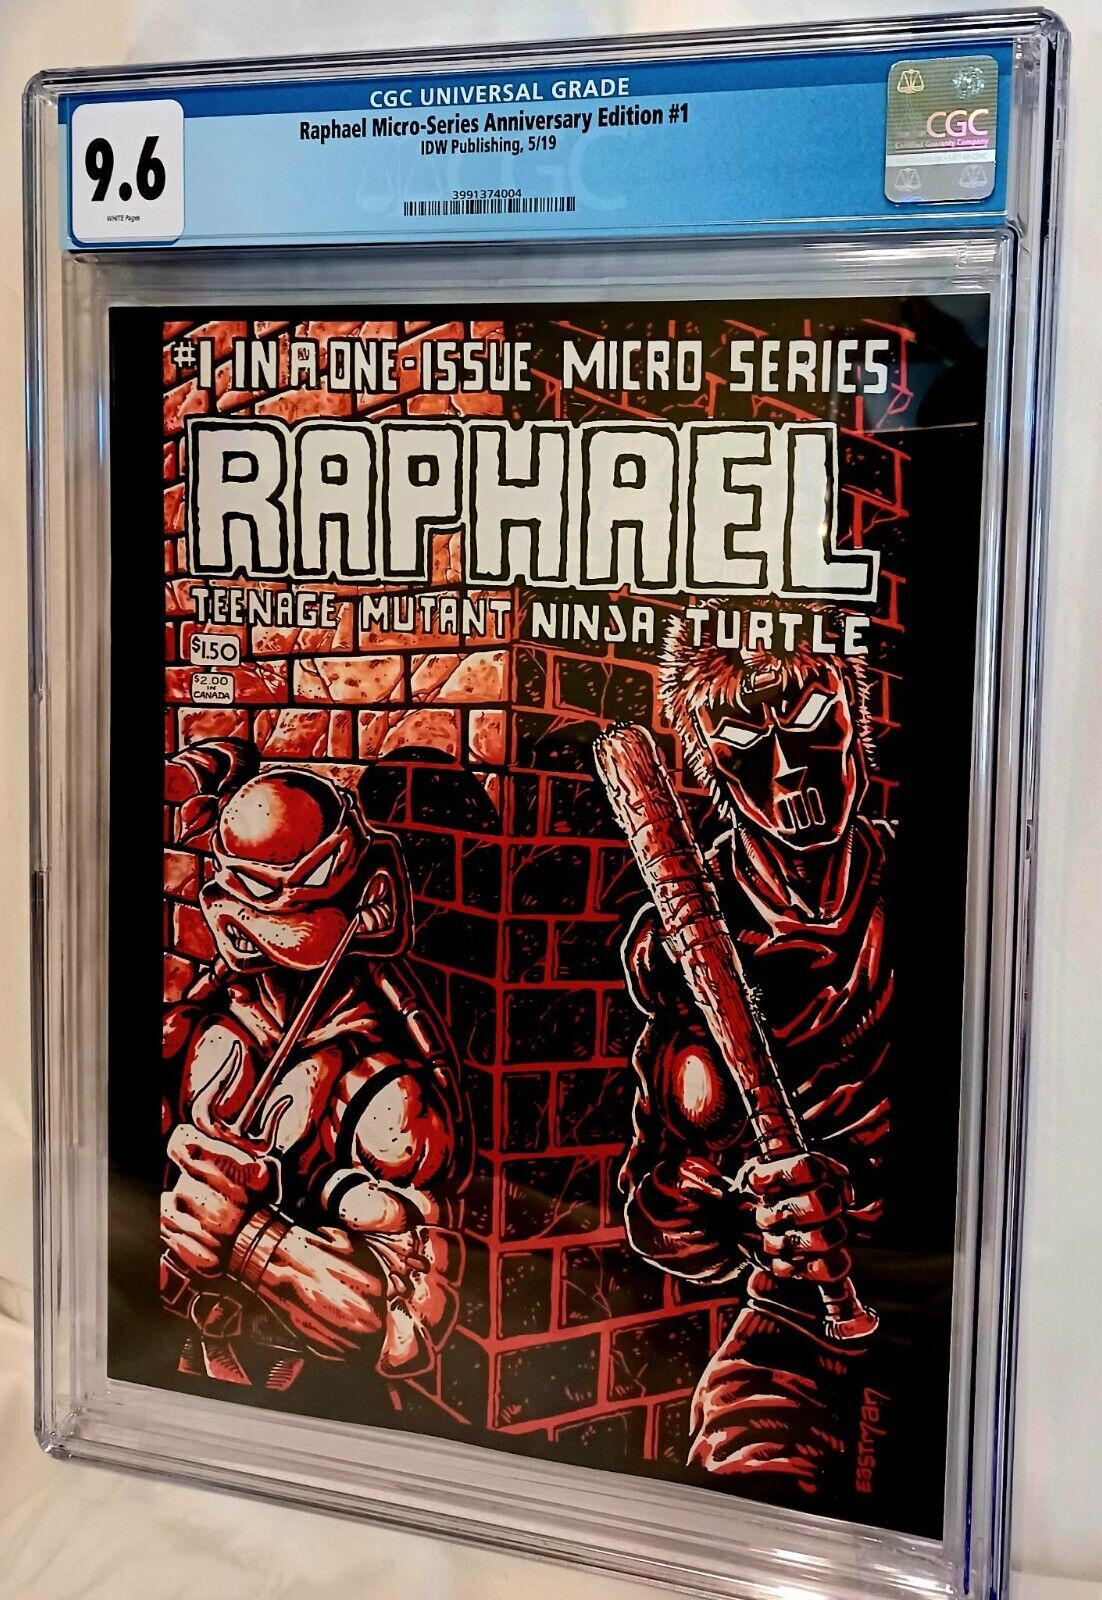 Teenage Mutant Ninja Turtles Raphael Micro-Series #1 Anniversary Edition CGC 9.6